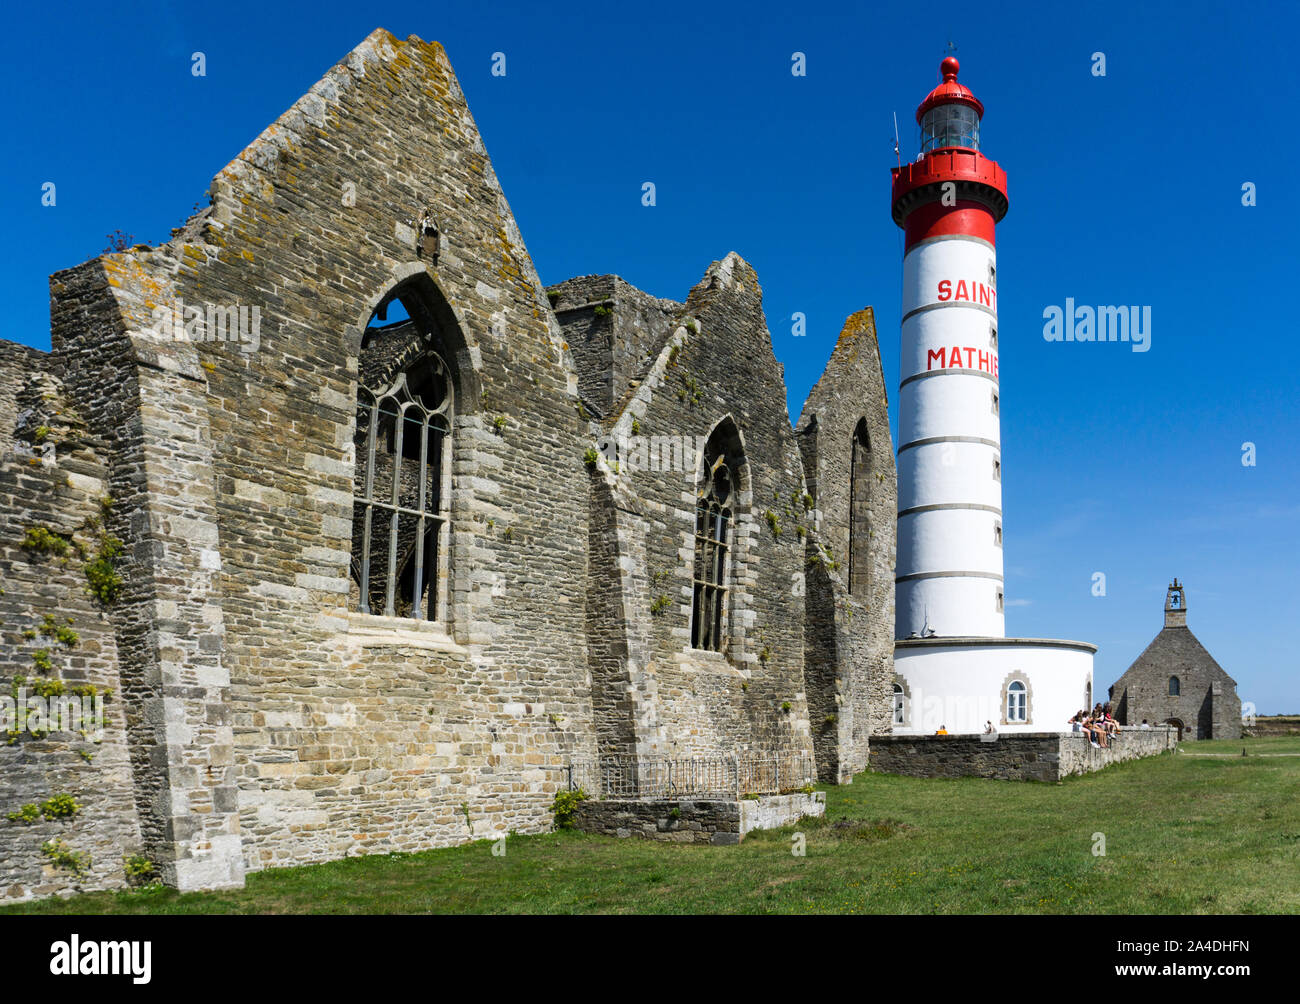 Crozon, Finistere/Frankreich - 22. August 2019: Blick auf den Punkt Saint  Mathieu Leuchtturm und Abtei und Kapelle an der Küste der Bretagne in  Frankreich Stockfotografie - Alamy